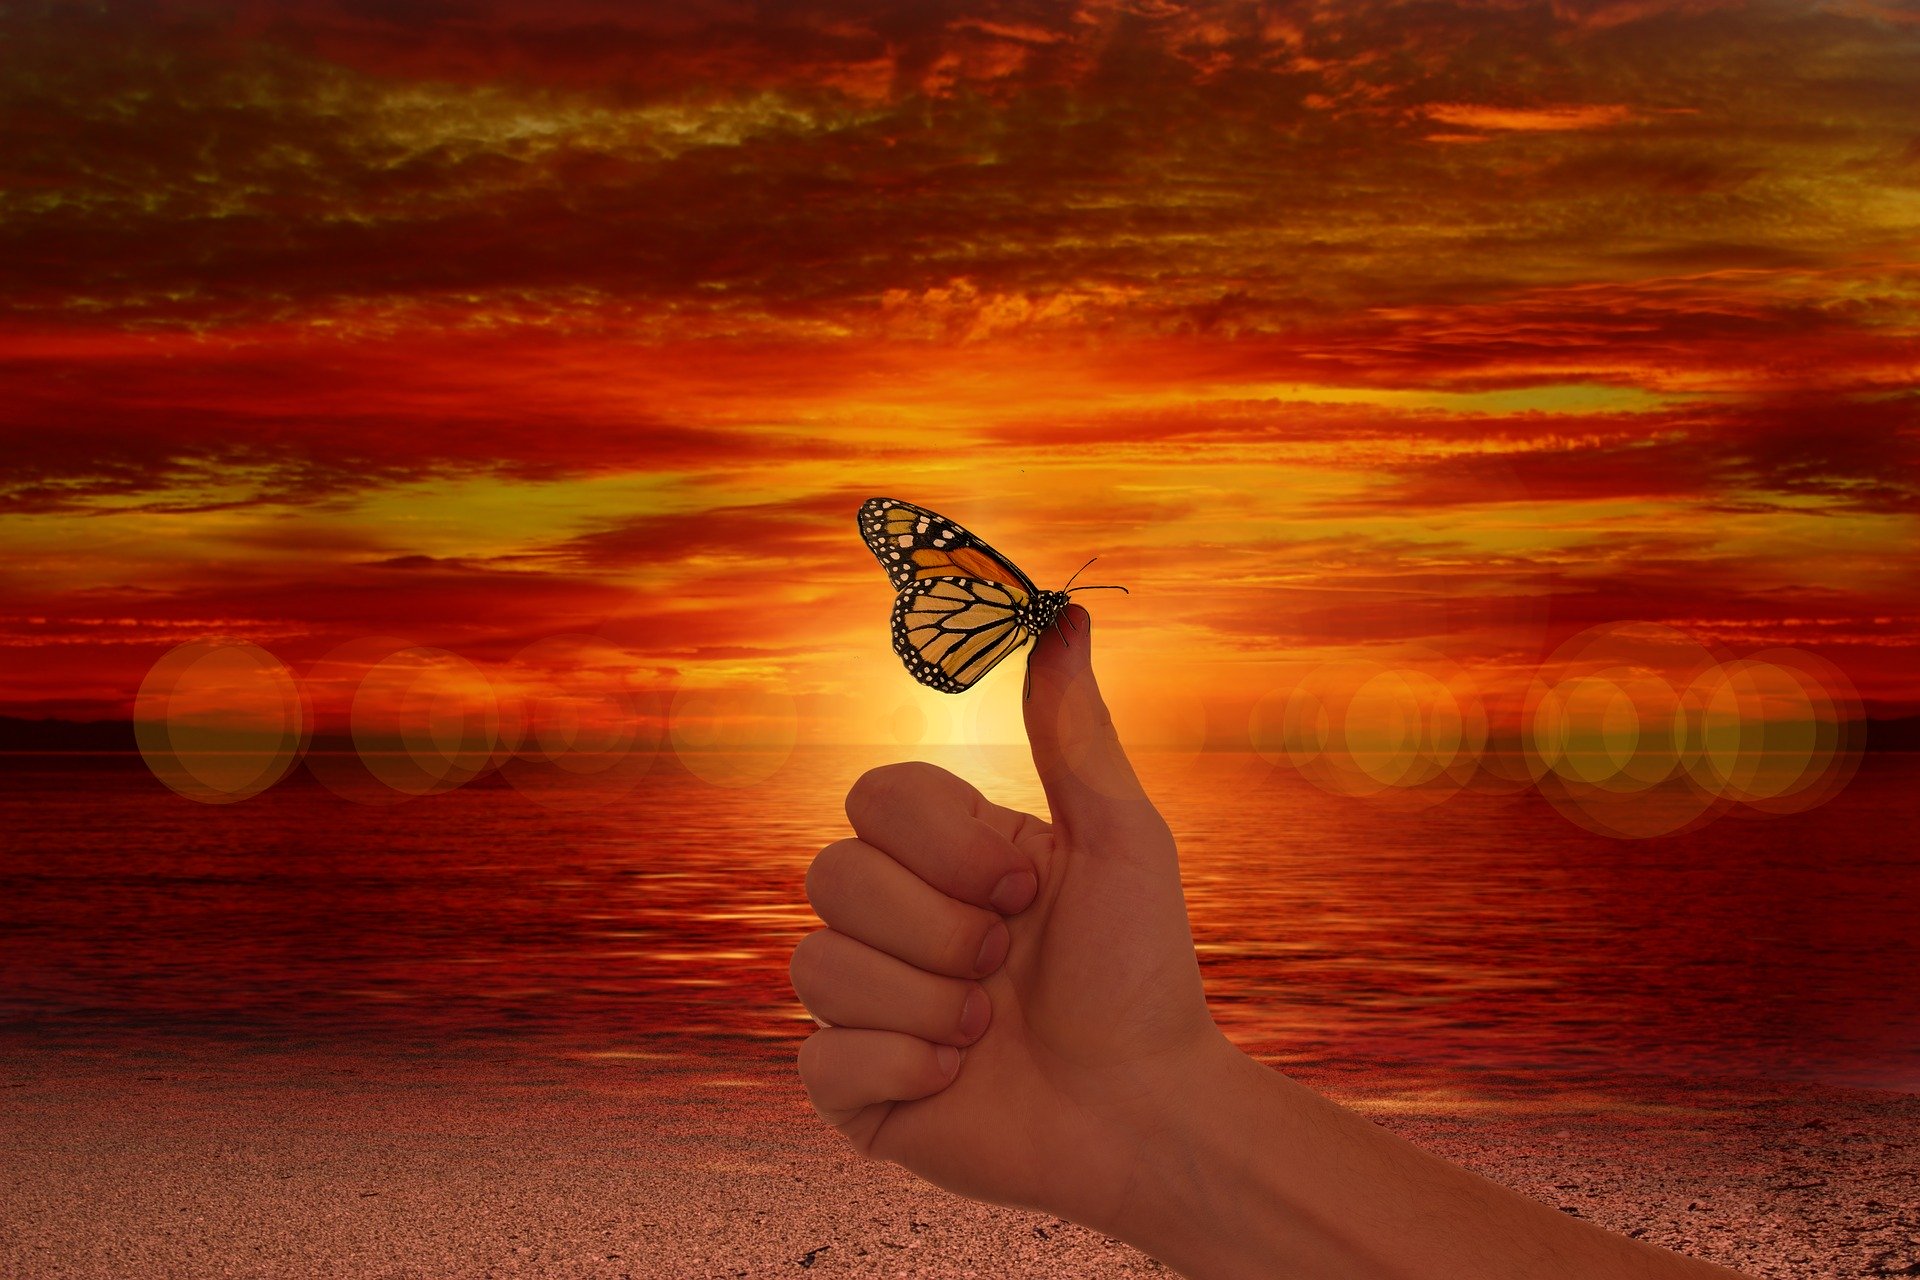 motyl siedzący na kciuku trzymanym w górę, na tle słońca.